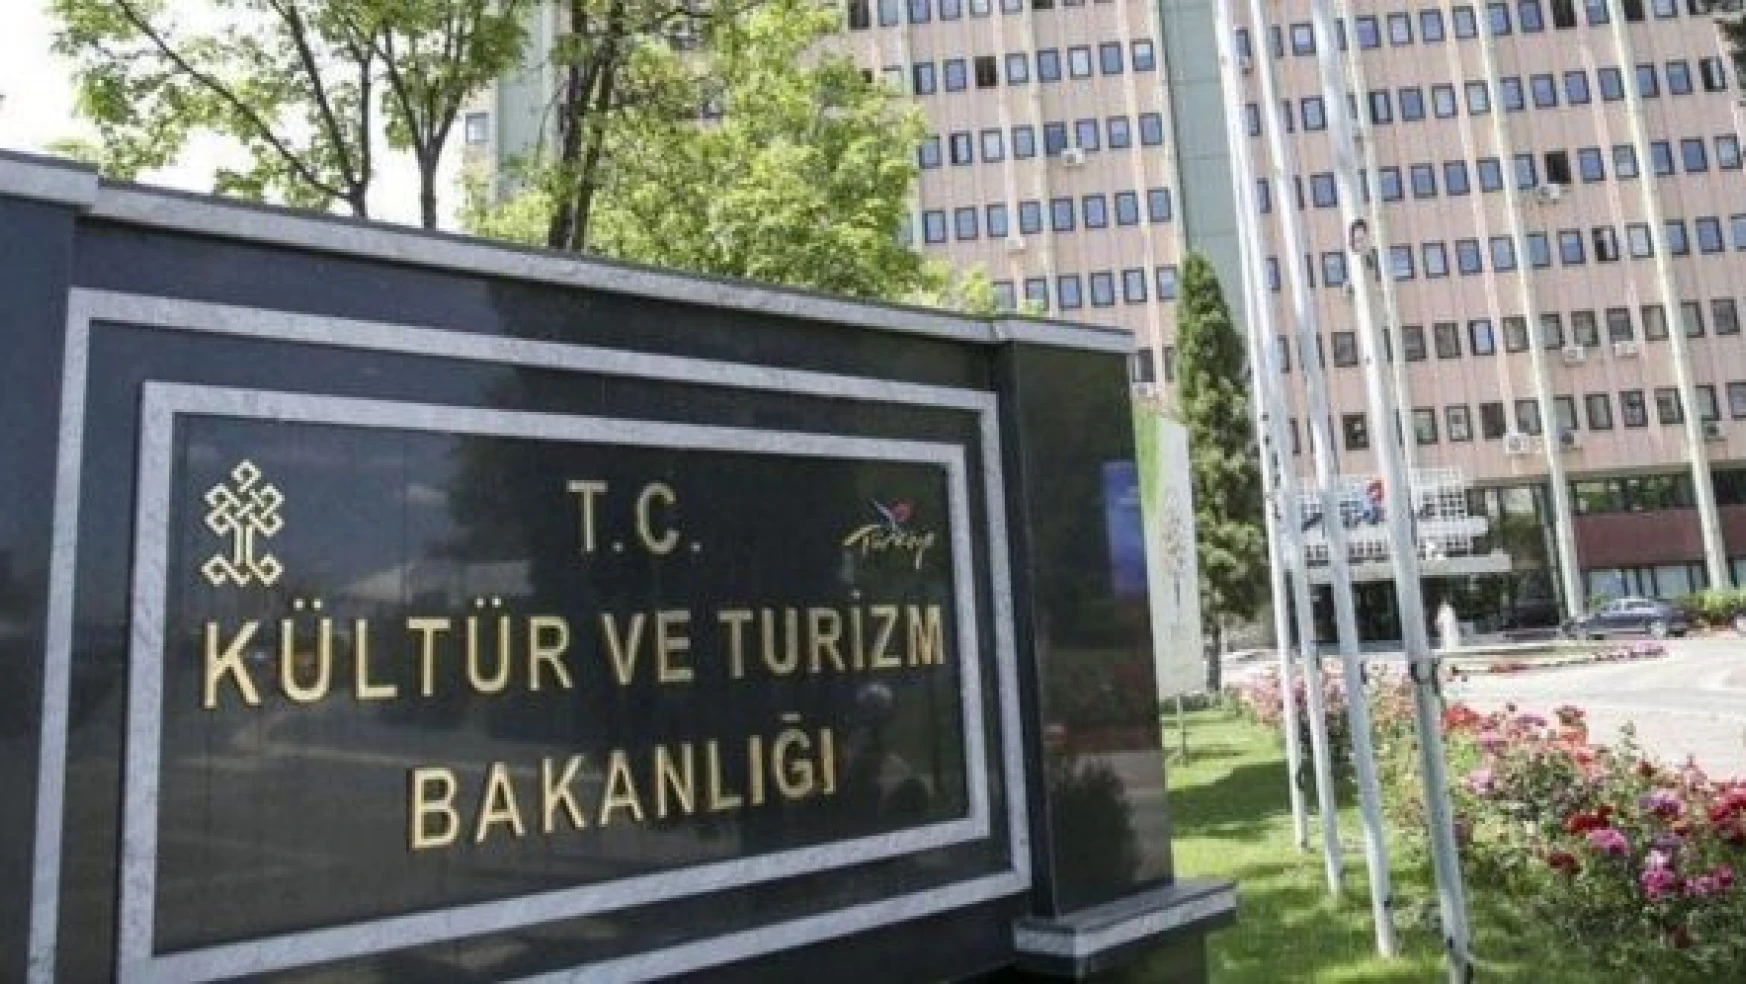 Kültür ve Turizm Bakanlığı Elazığ'da sözleşmeli personel alacak